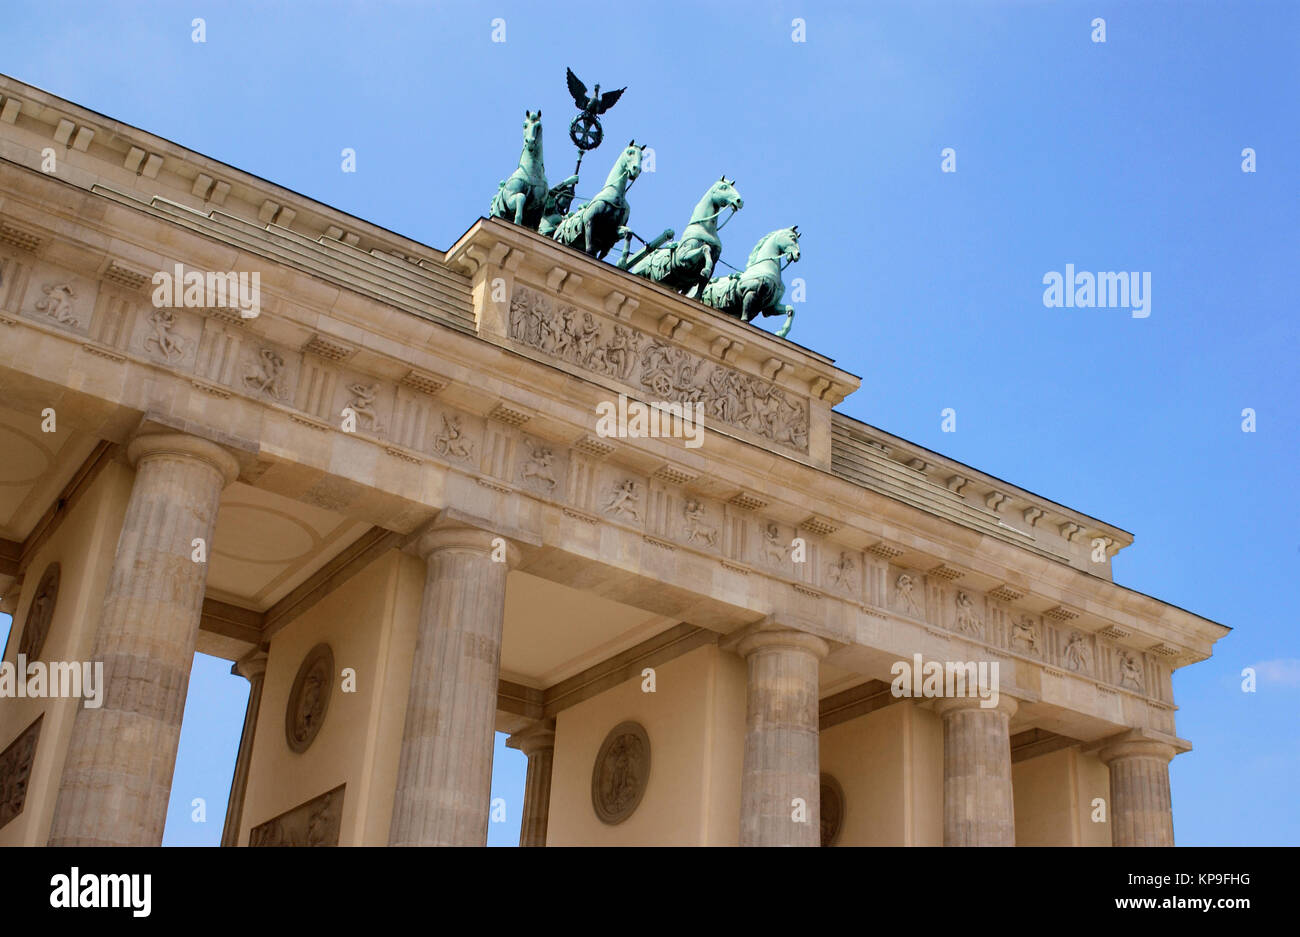 Das Brandenburger Tor in Berlin in Deutschland. Es ist ein ehemaliges Stadttor und ist nun das einzige Tor in einer Reihe, durch die Berlin wa Stockfoto